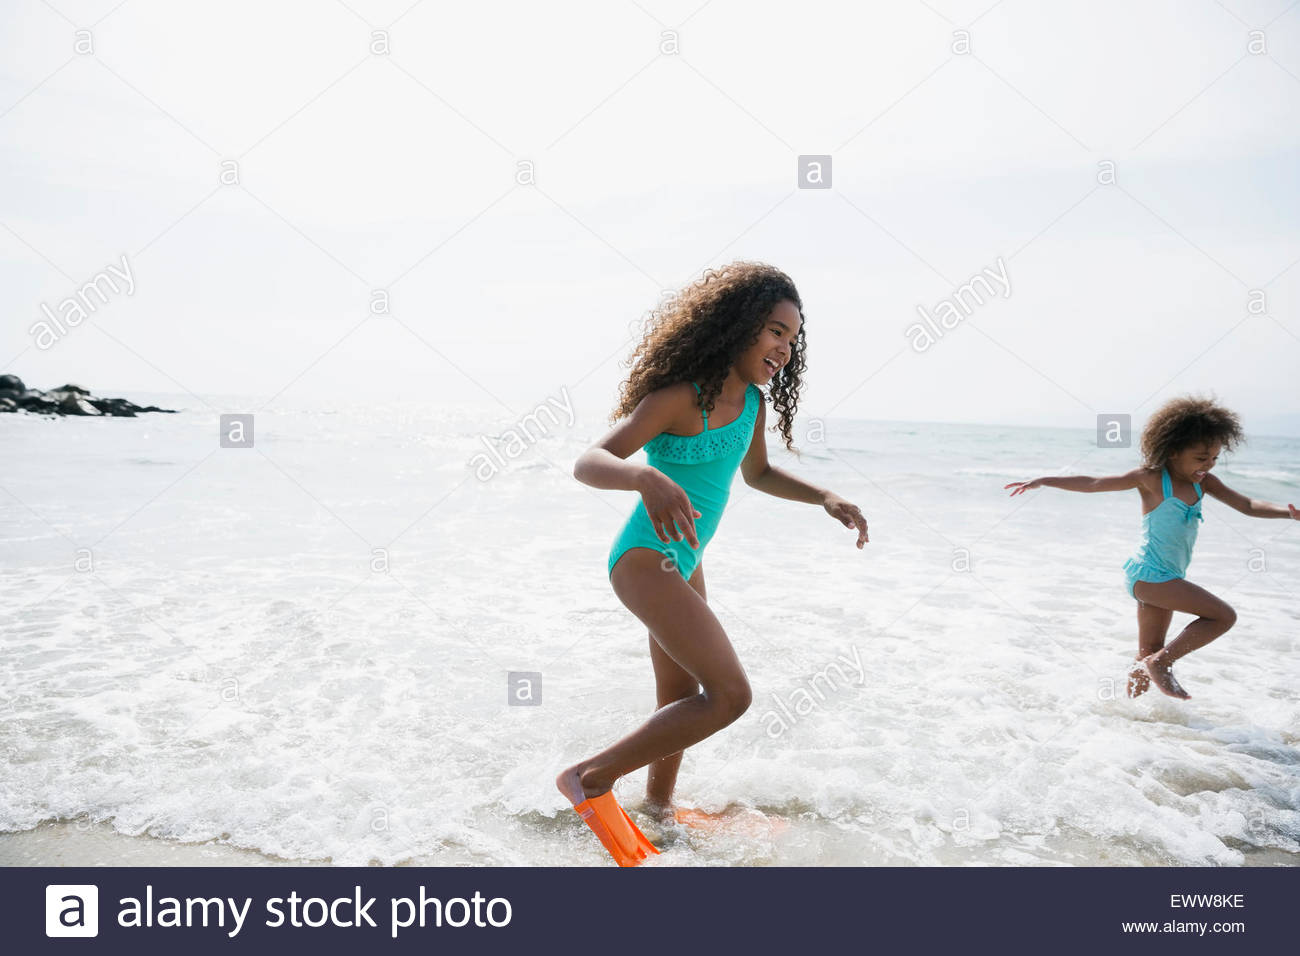 Sisters in bathing suits splashing in ocean Stock Photo